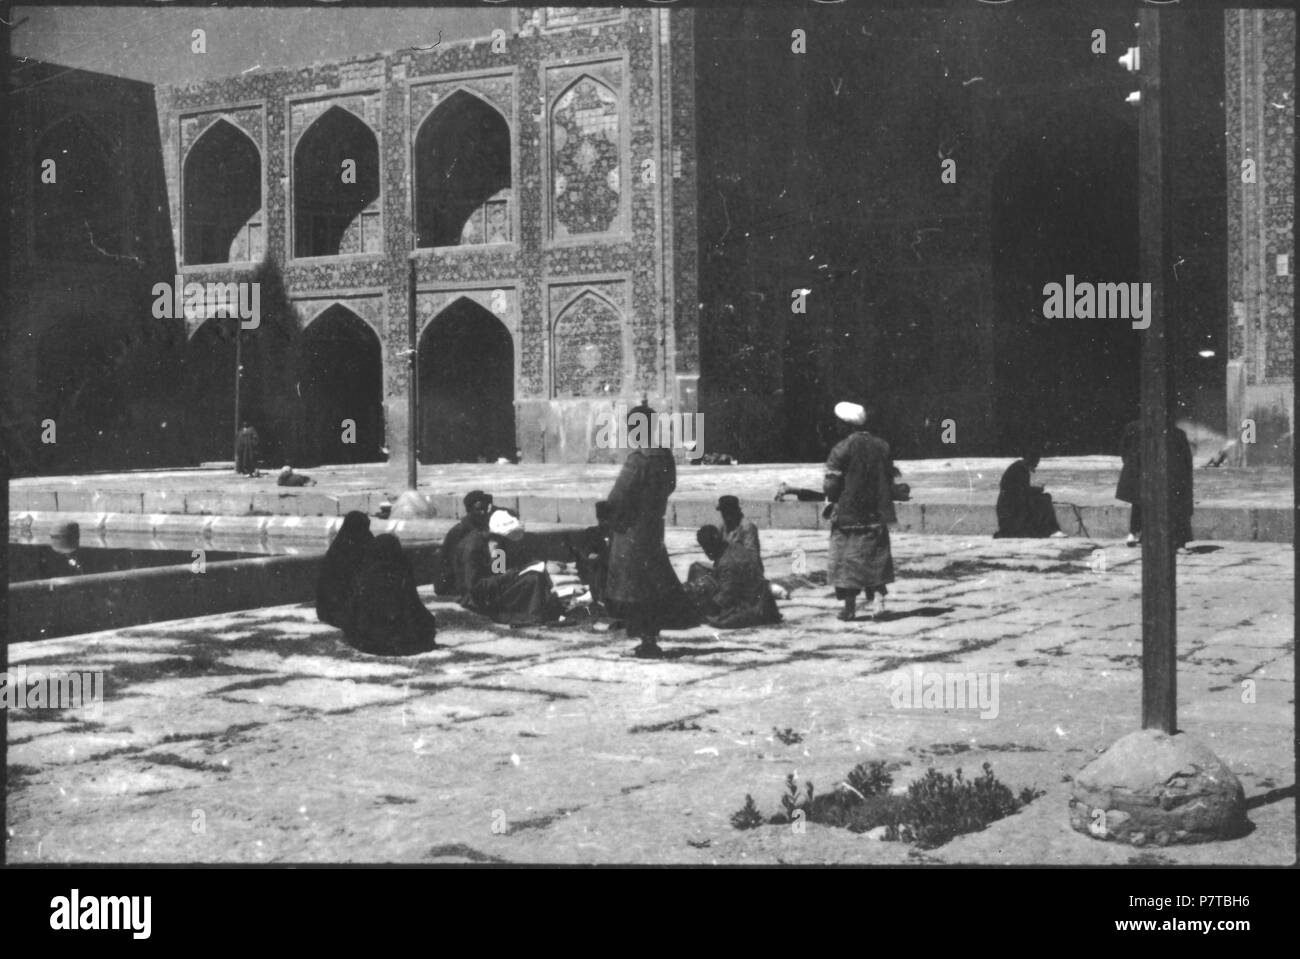 77 CH-NB - Persien, Isfahan- Palast der 40 Säulen (Lokalisierung unsicher) - Annemarie Schwarzenbach - SLA-Schwarzenbach-A-5-04-195 Stock Photo